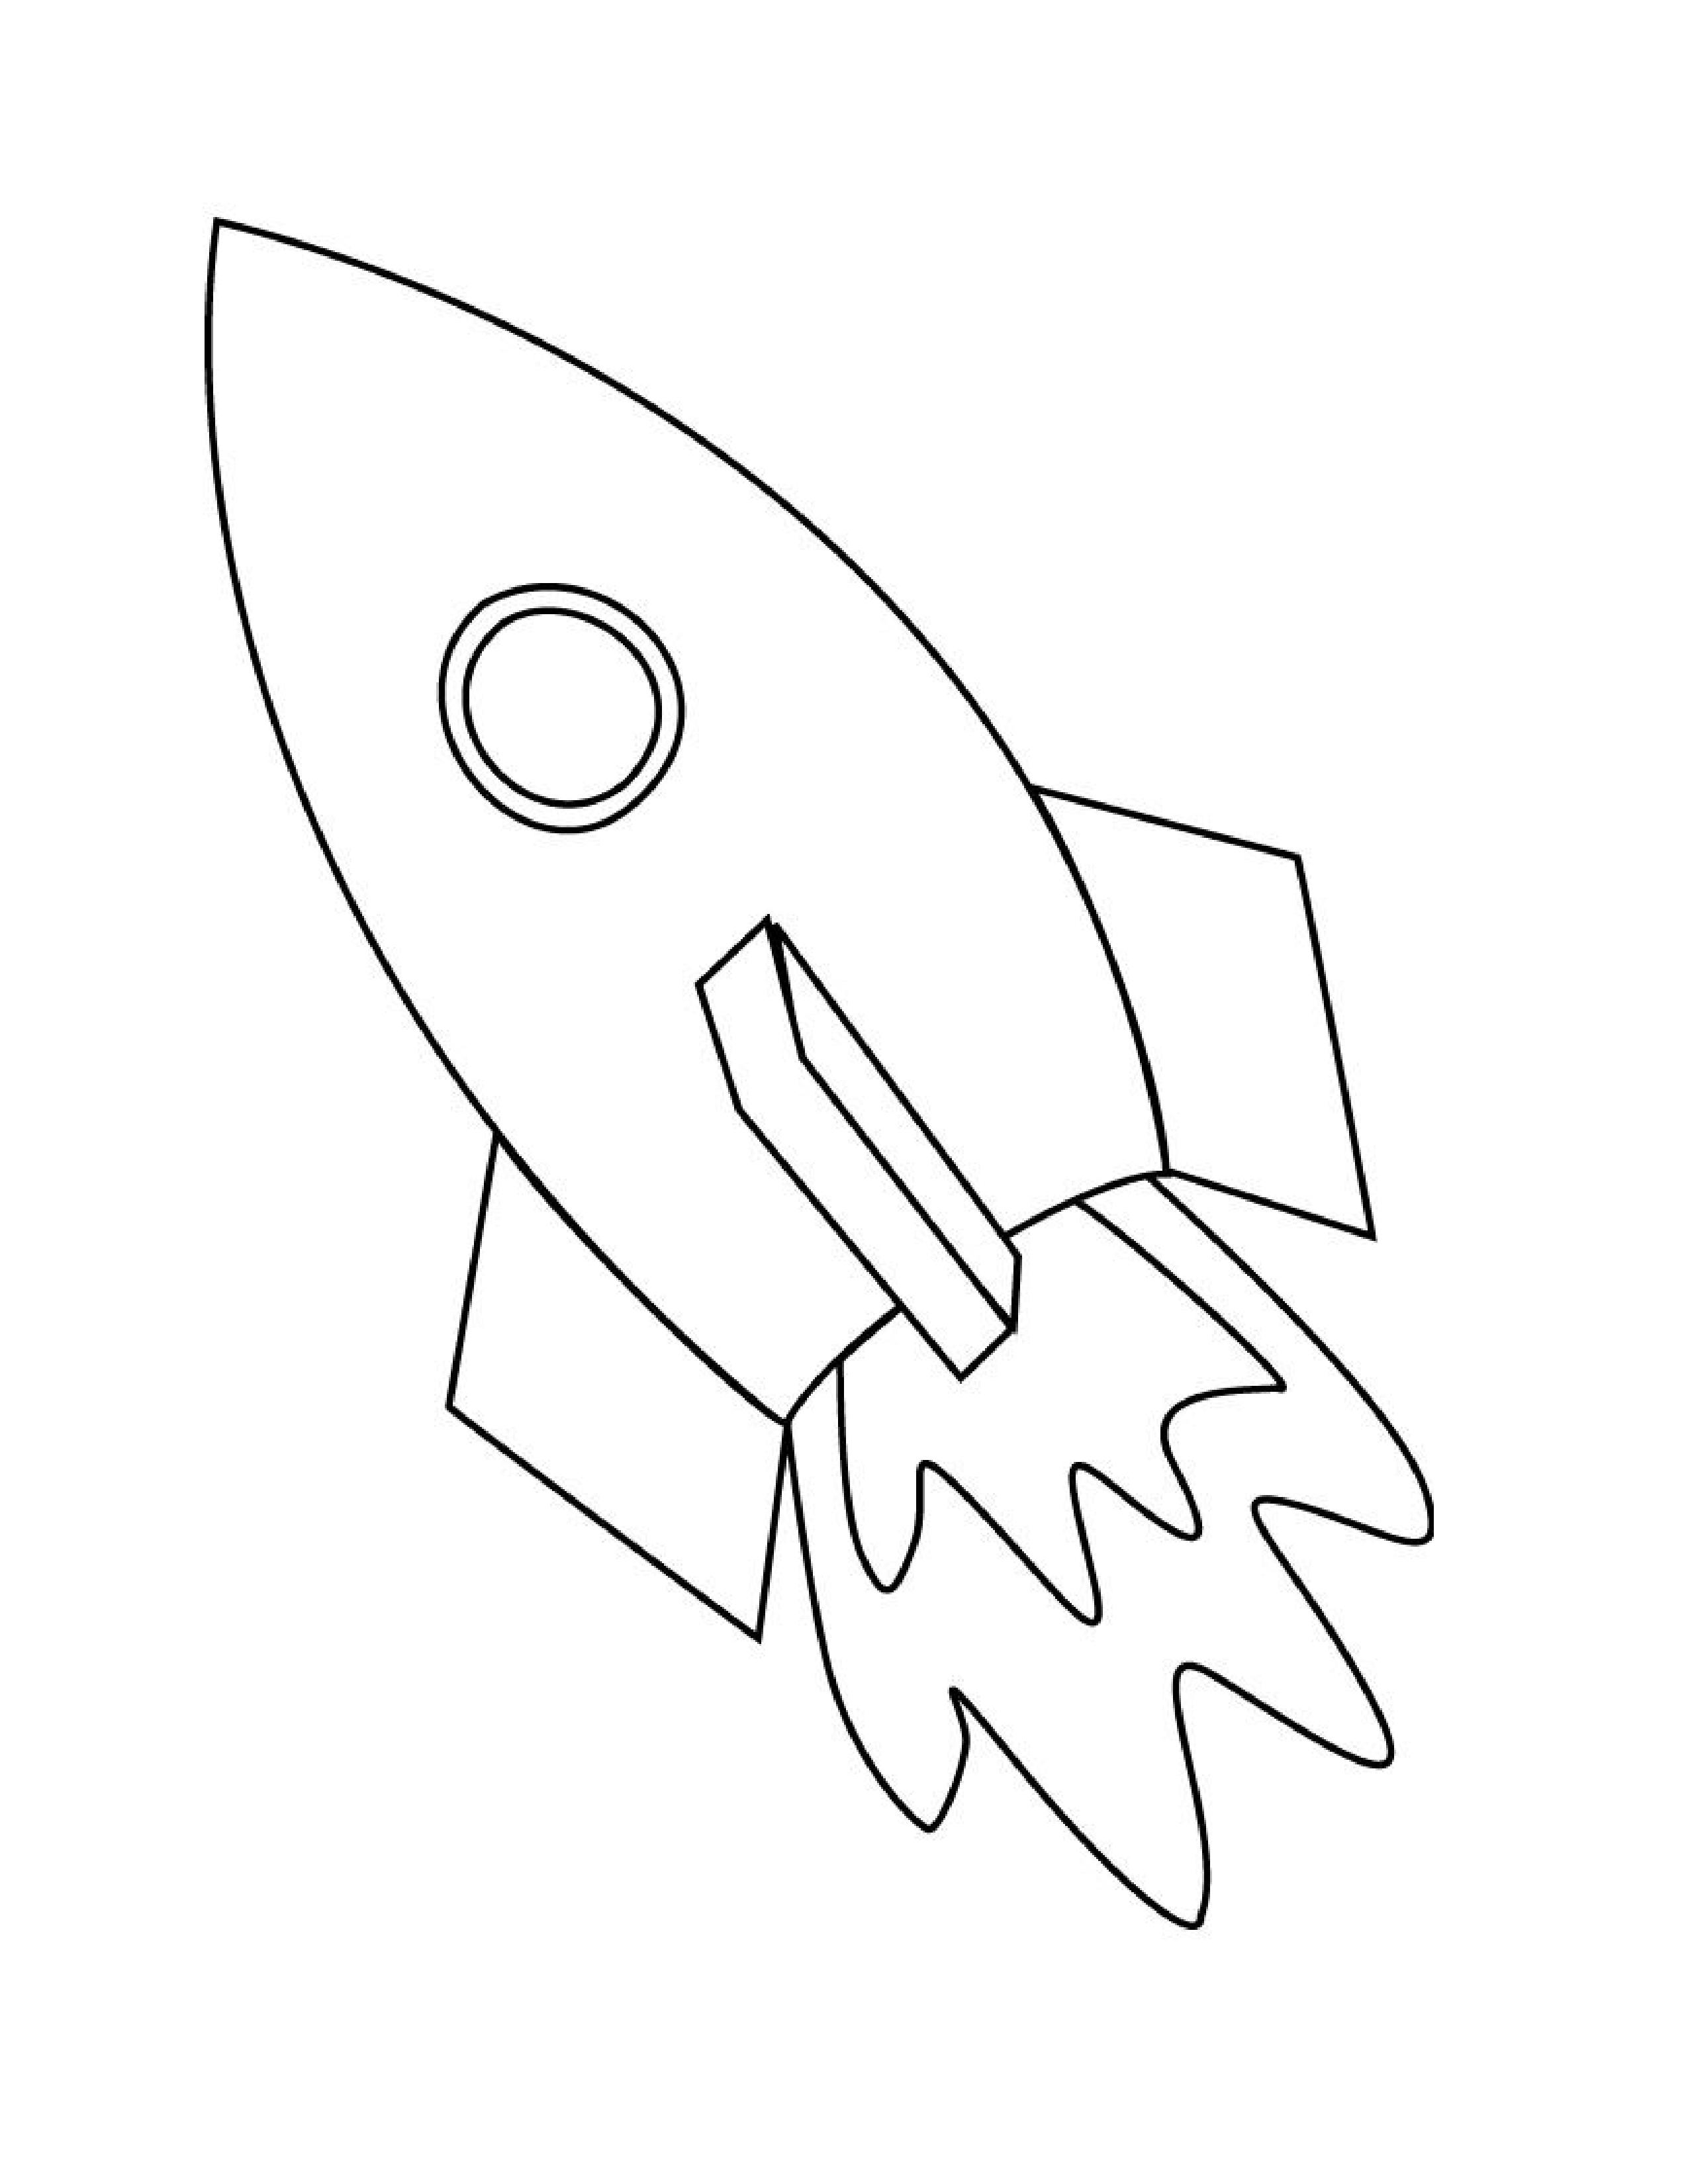 Шаблон ракеты для аппликации ко дню космонавтики. Ракета раскраска. Ракета раскраска для детей. Космическая ракета раскраска. Ракета рисунок контур.